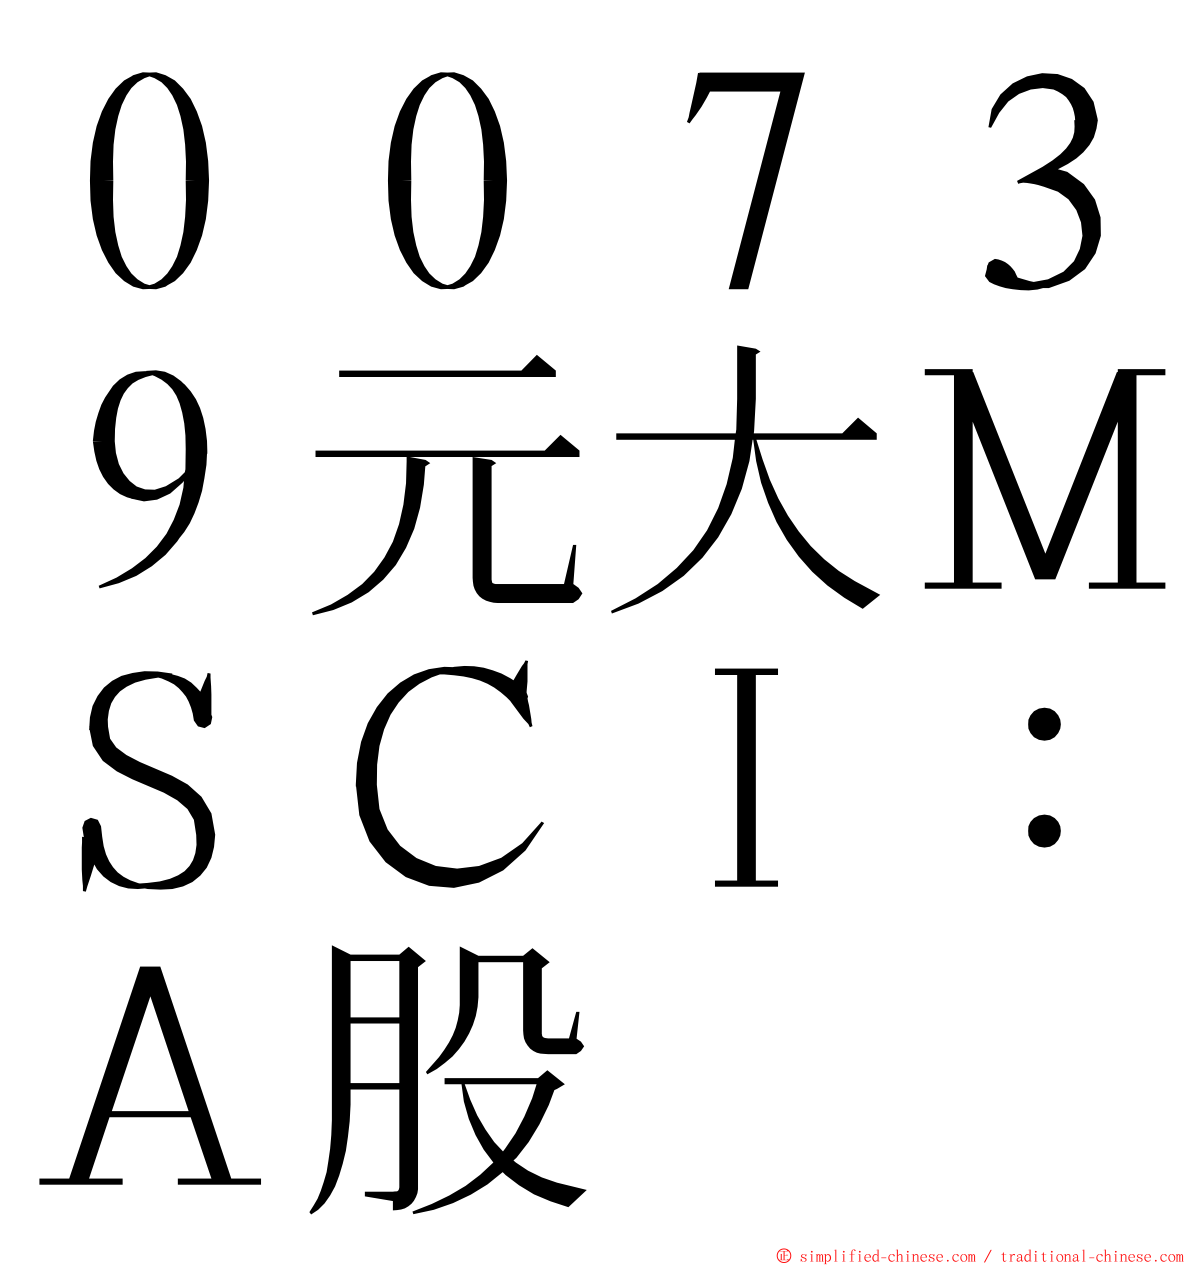 ００７３９元大ＭＳＣＩ：Ａ股 ming font